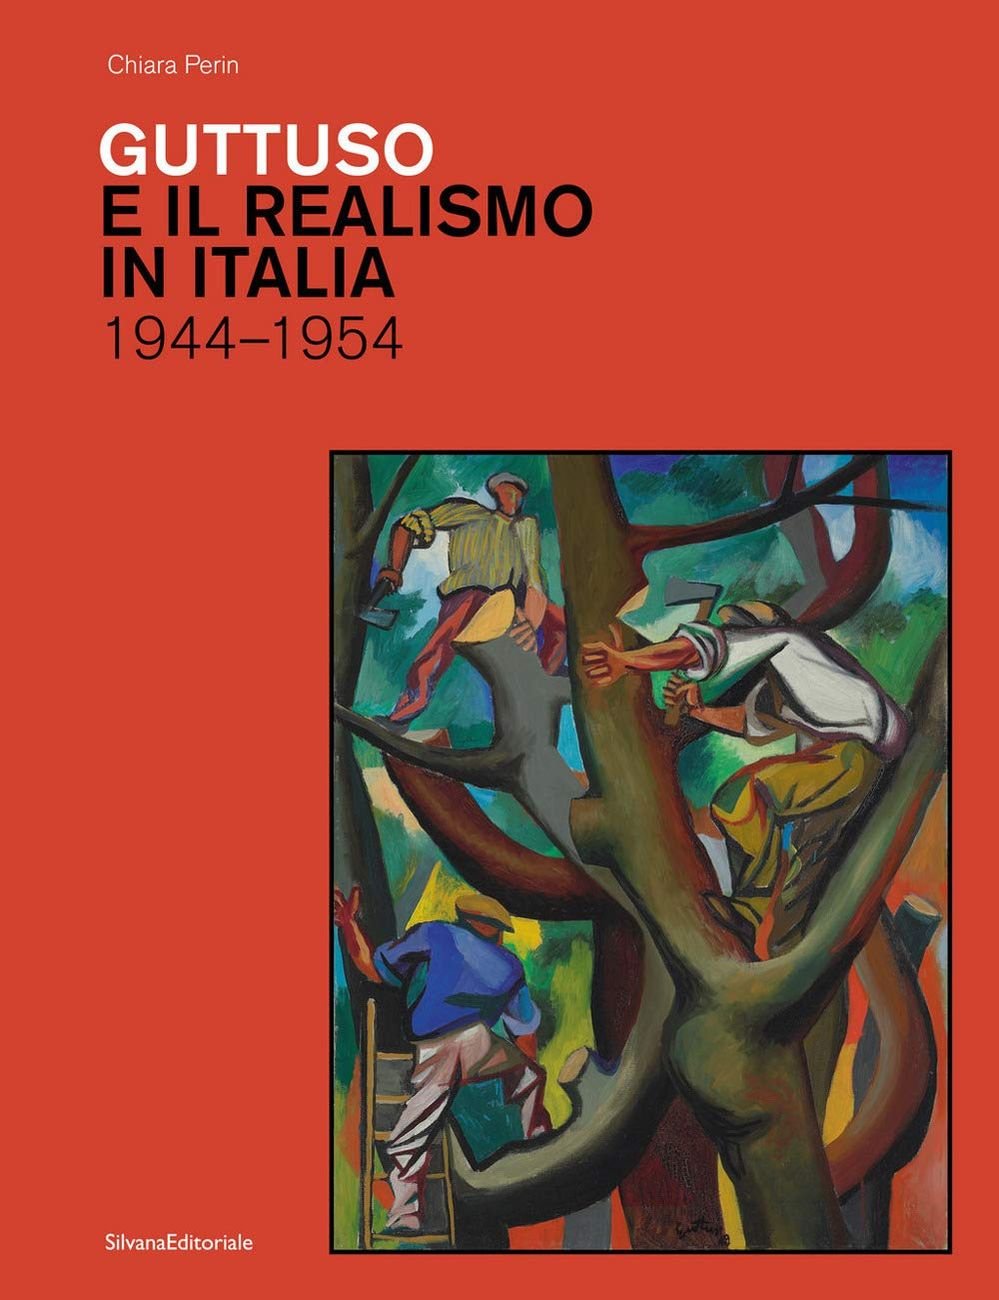 Chiara Perin – Guttuso e il Realismo in Italia 1944 1954 (Silvana Editoriale, Cinisello Balsamo 2021)